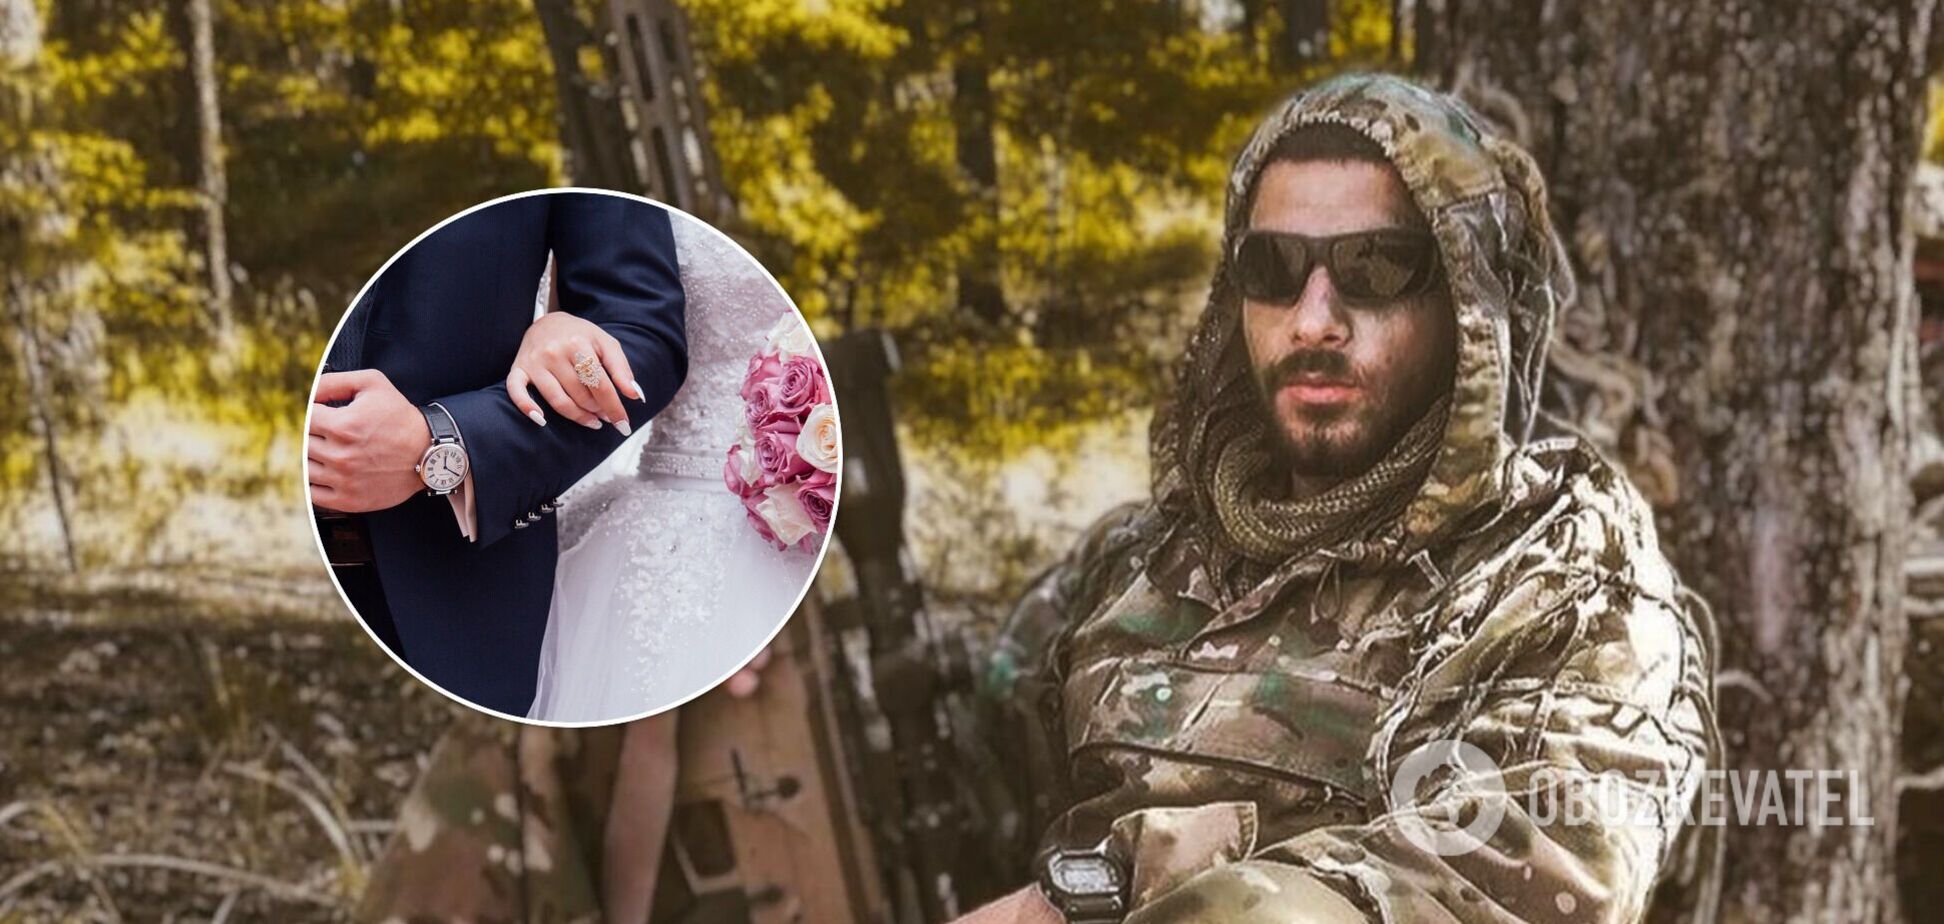 Військовий, якого називали 'крашем' і секс-символом української армії, одружився. Фото